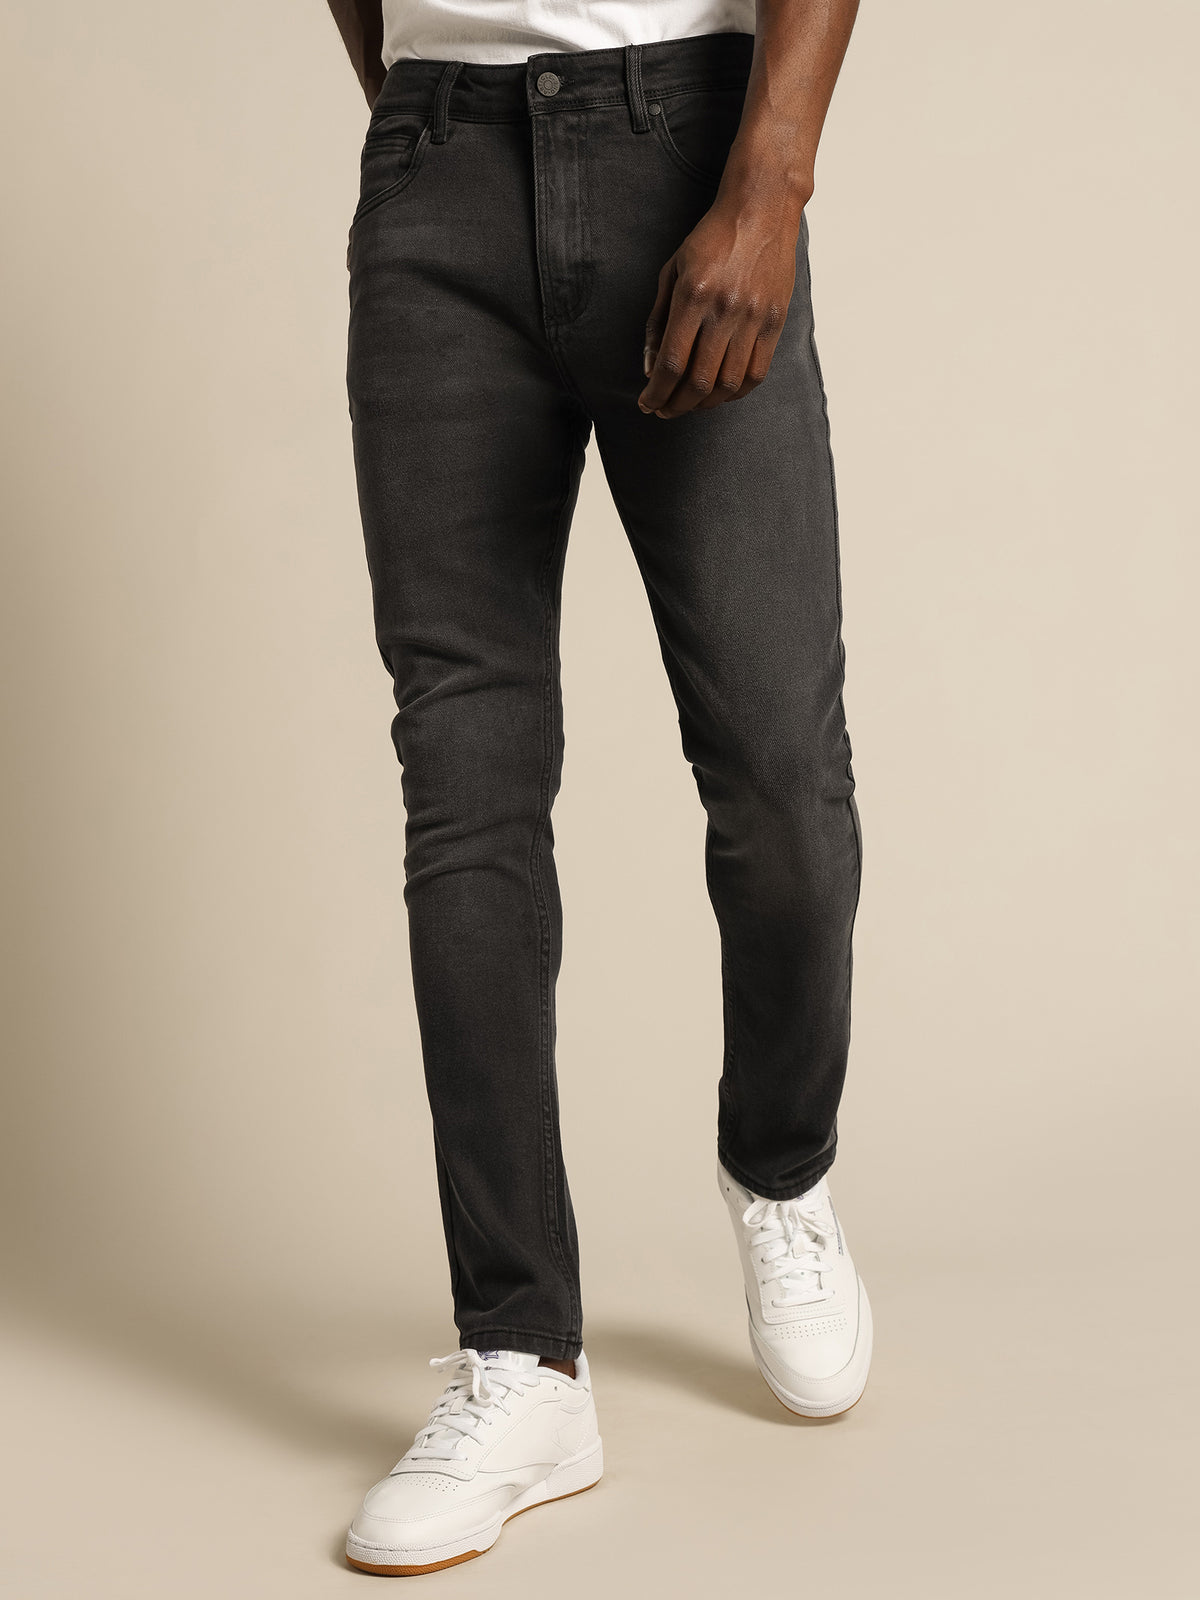 Zane Skinny Jeans in Washed Black